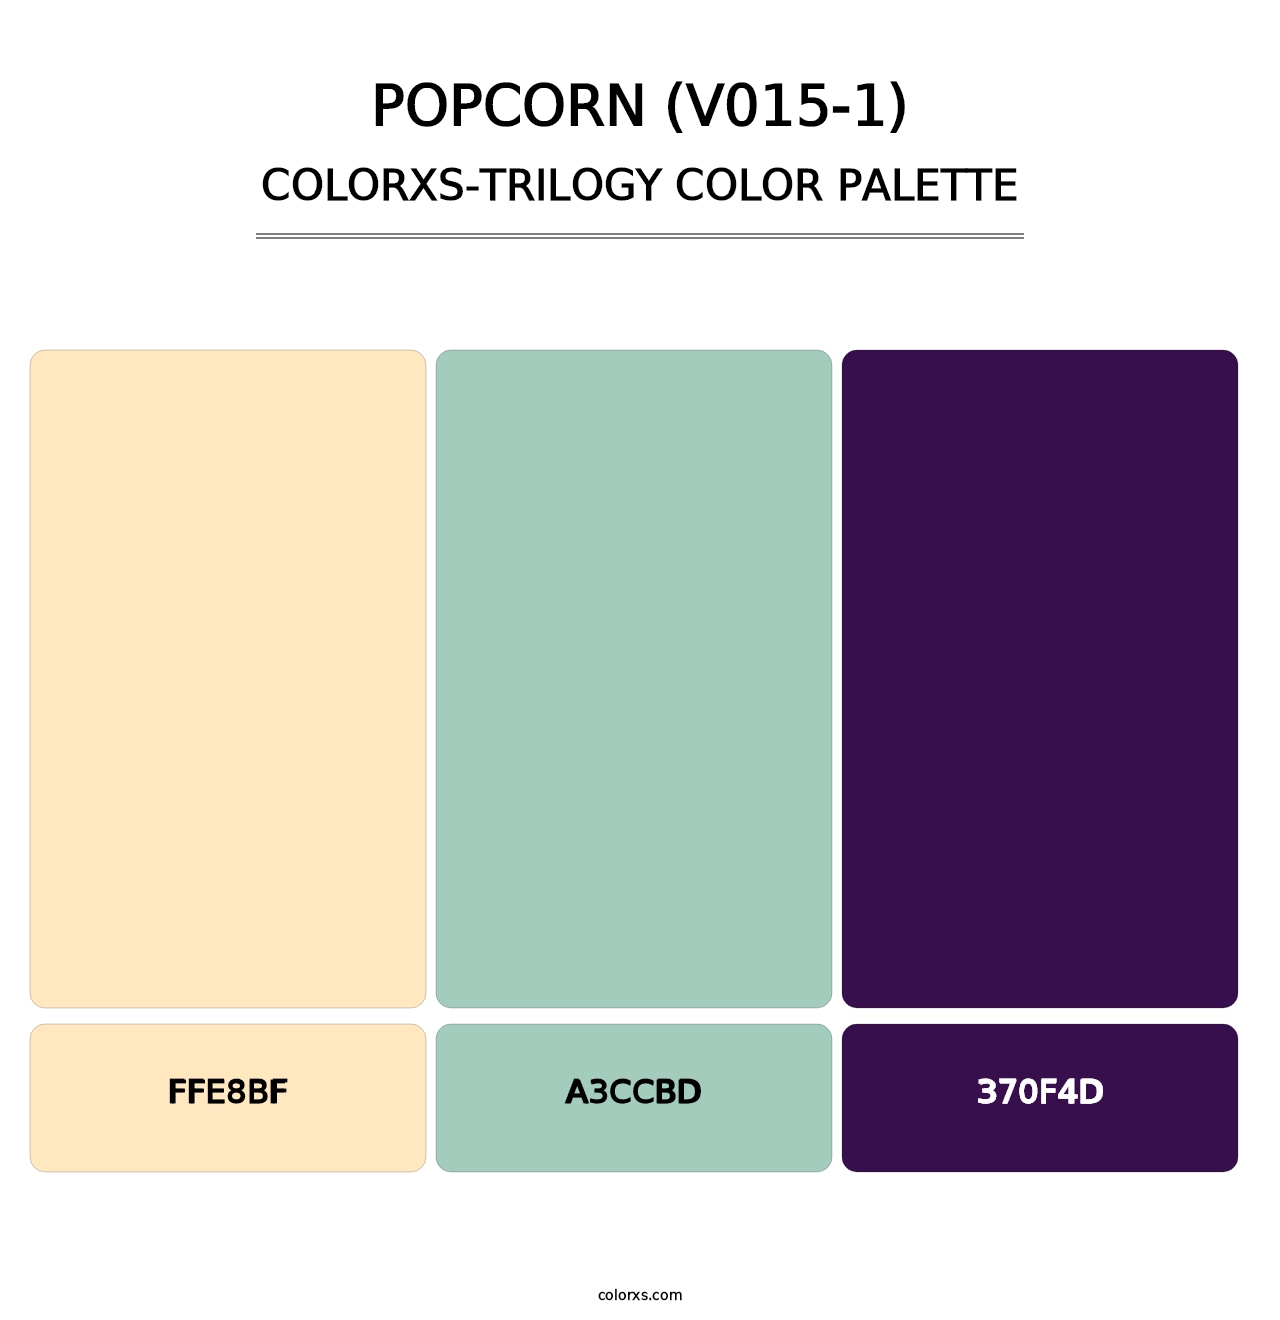 Popcorn (V015-1) - Colorxs Trilogy Palette